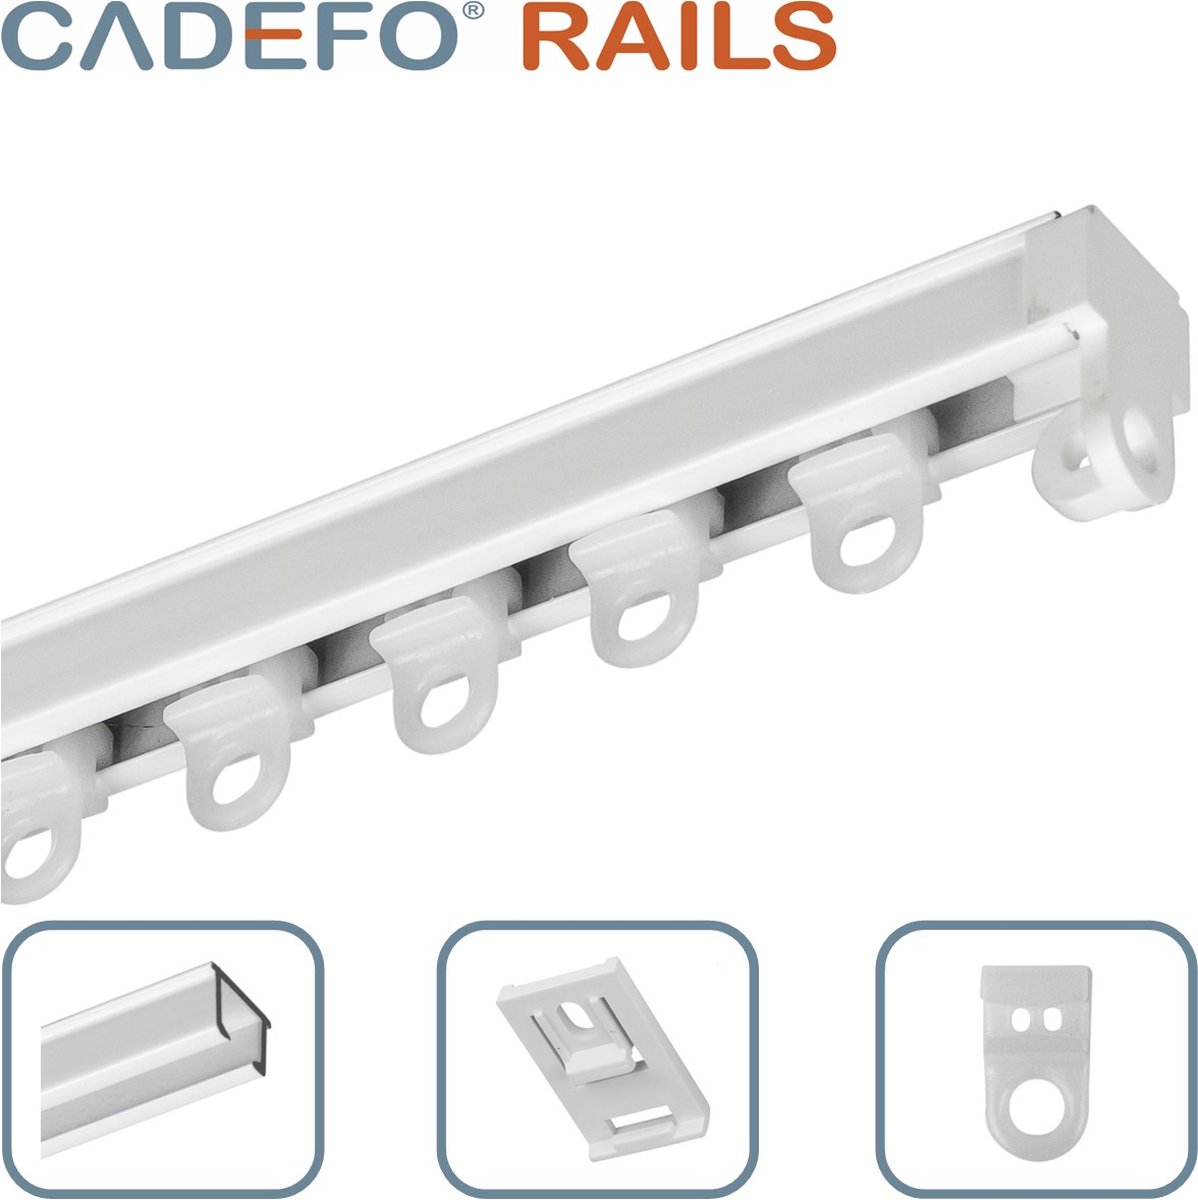 CADEFO RAILS (351 - 400 cm) Gordijnrails - Compleet op maat! - UIT 1 STUK - Leverbaar tot 6 meter - Plafondbevestiging - Lengte 357 cm